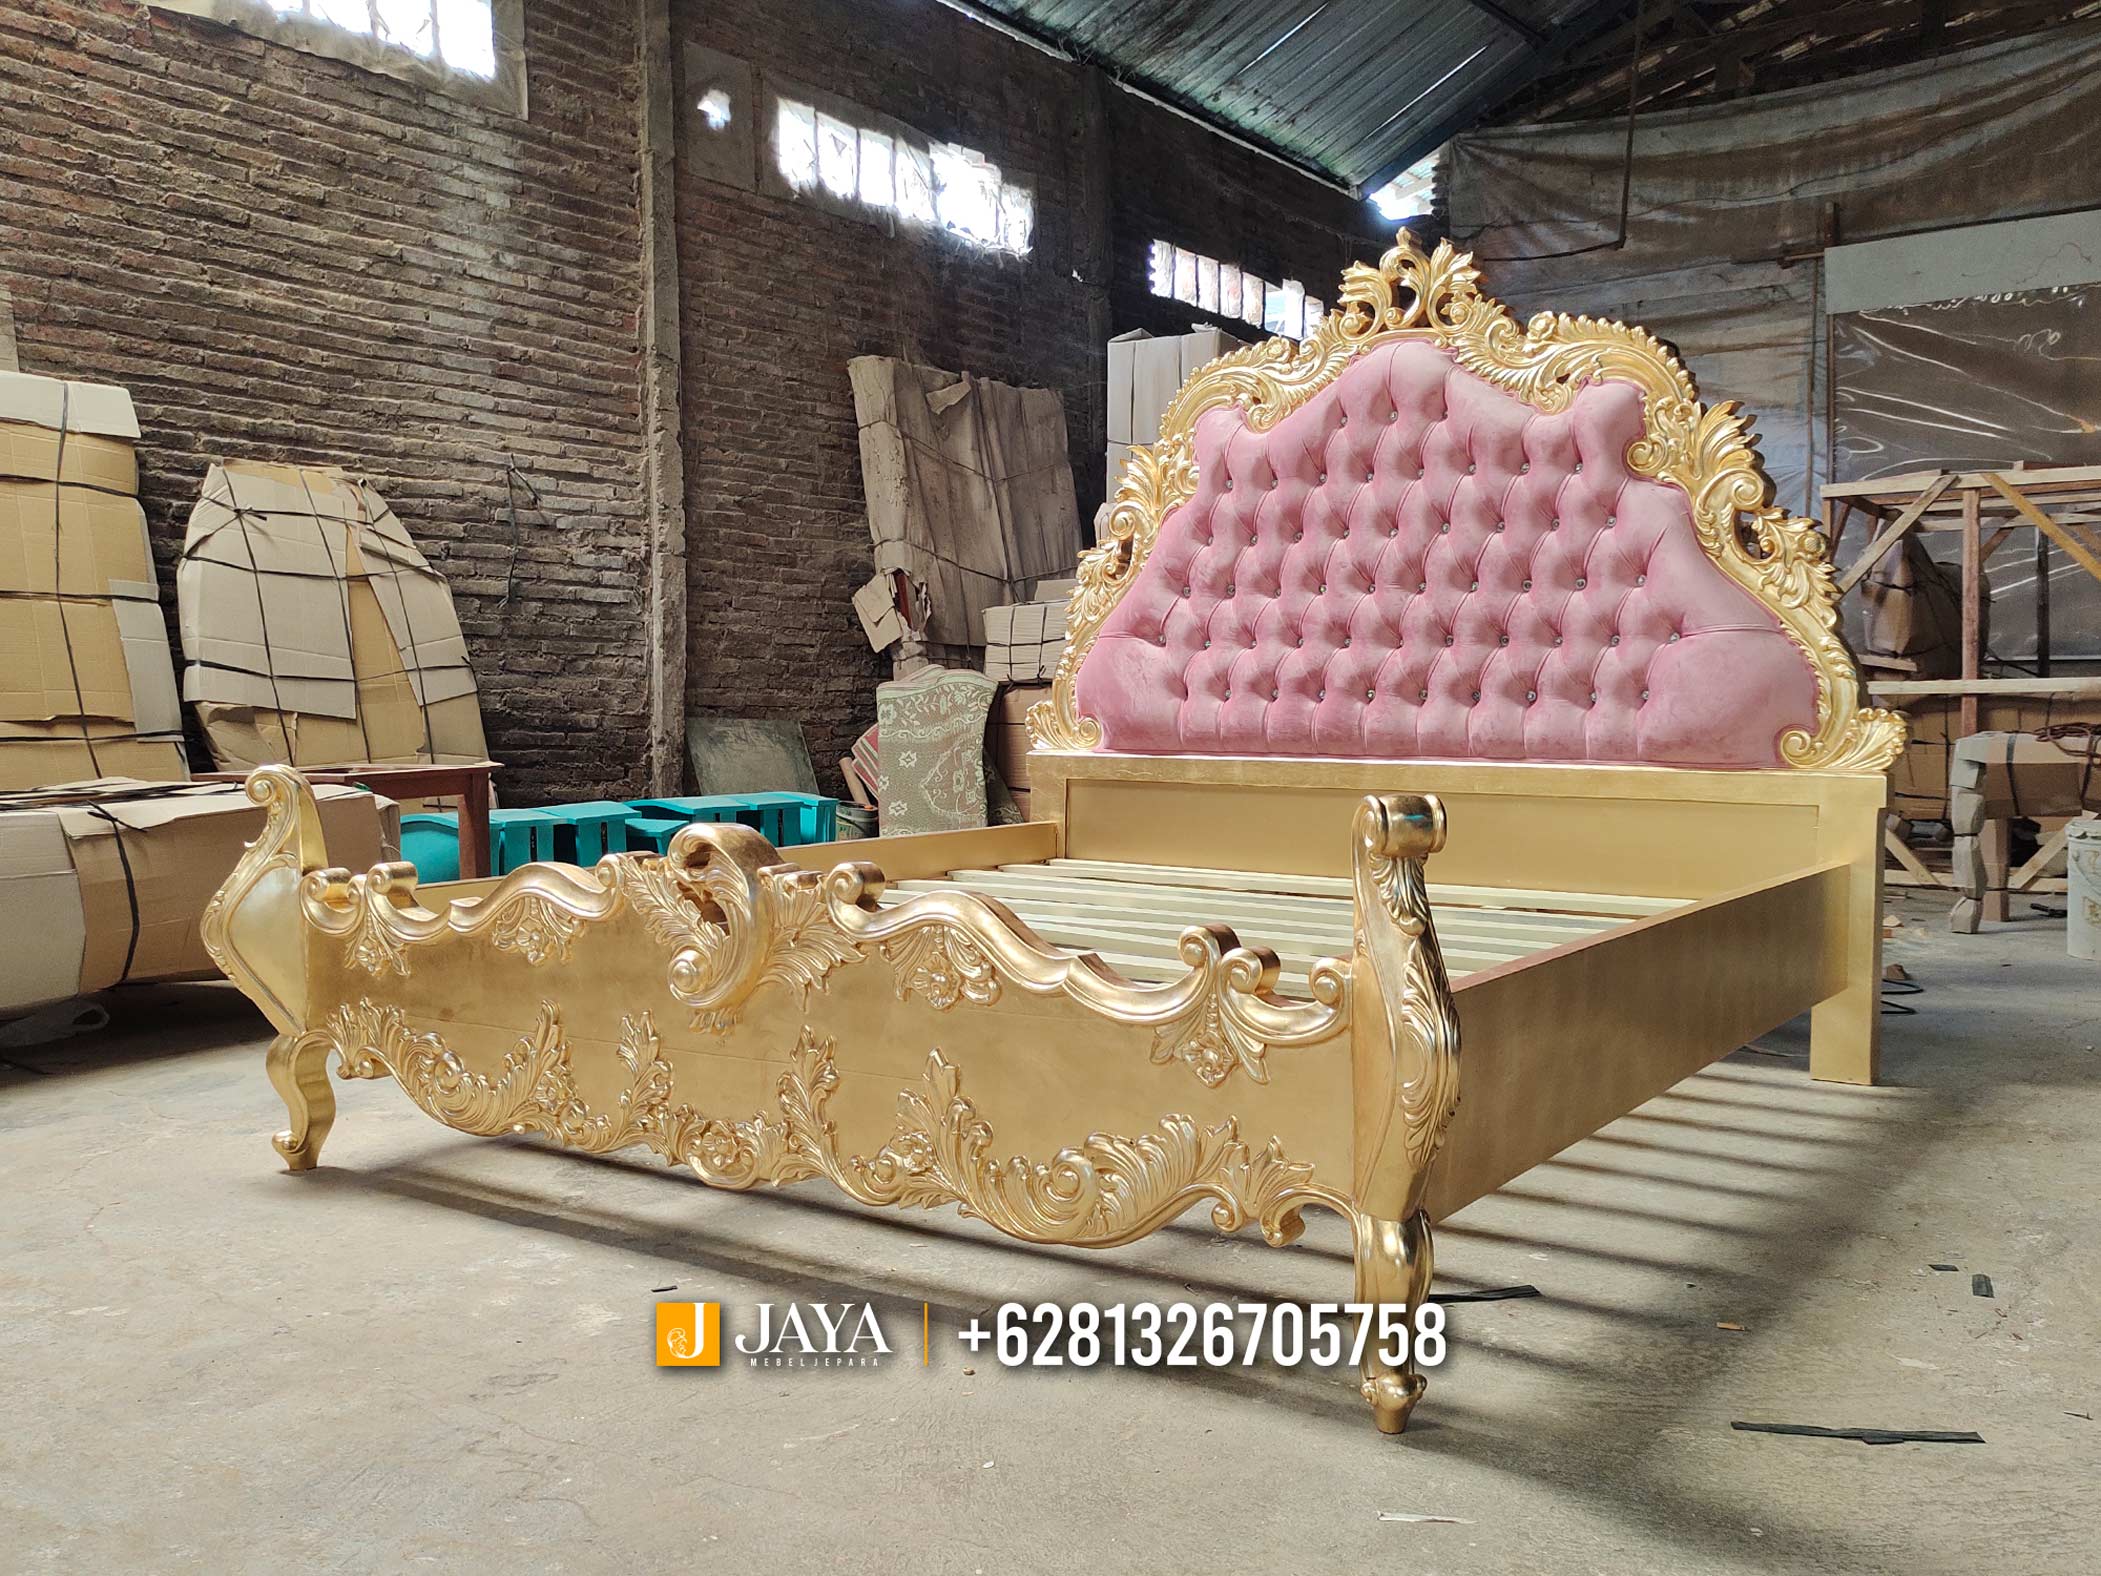 Harga Tempat Tidur Mewah Ukiran Furniture Jepara Glamorous Gold JM50